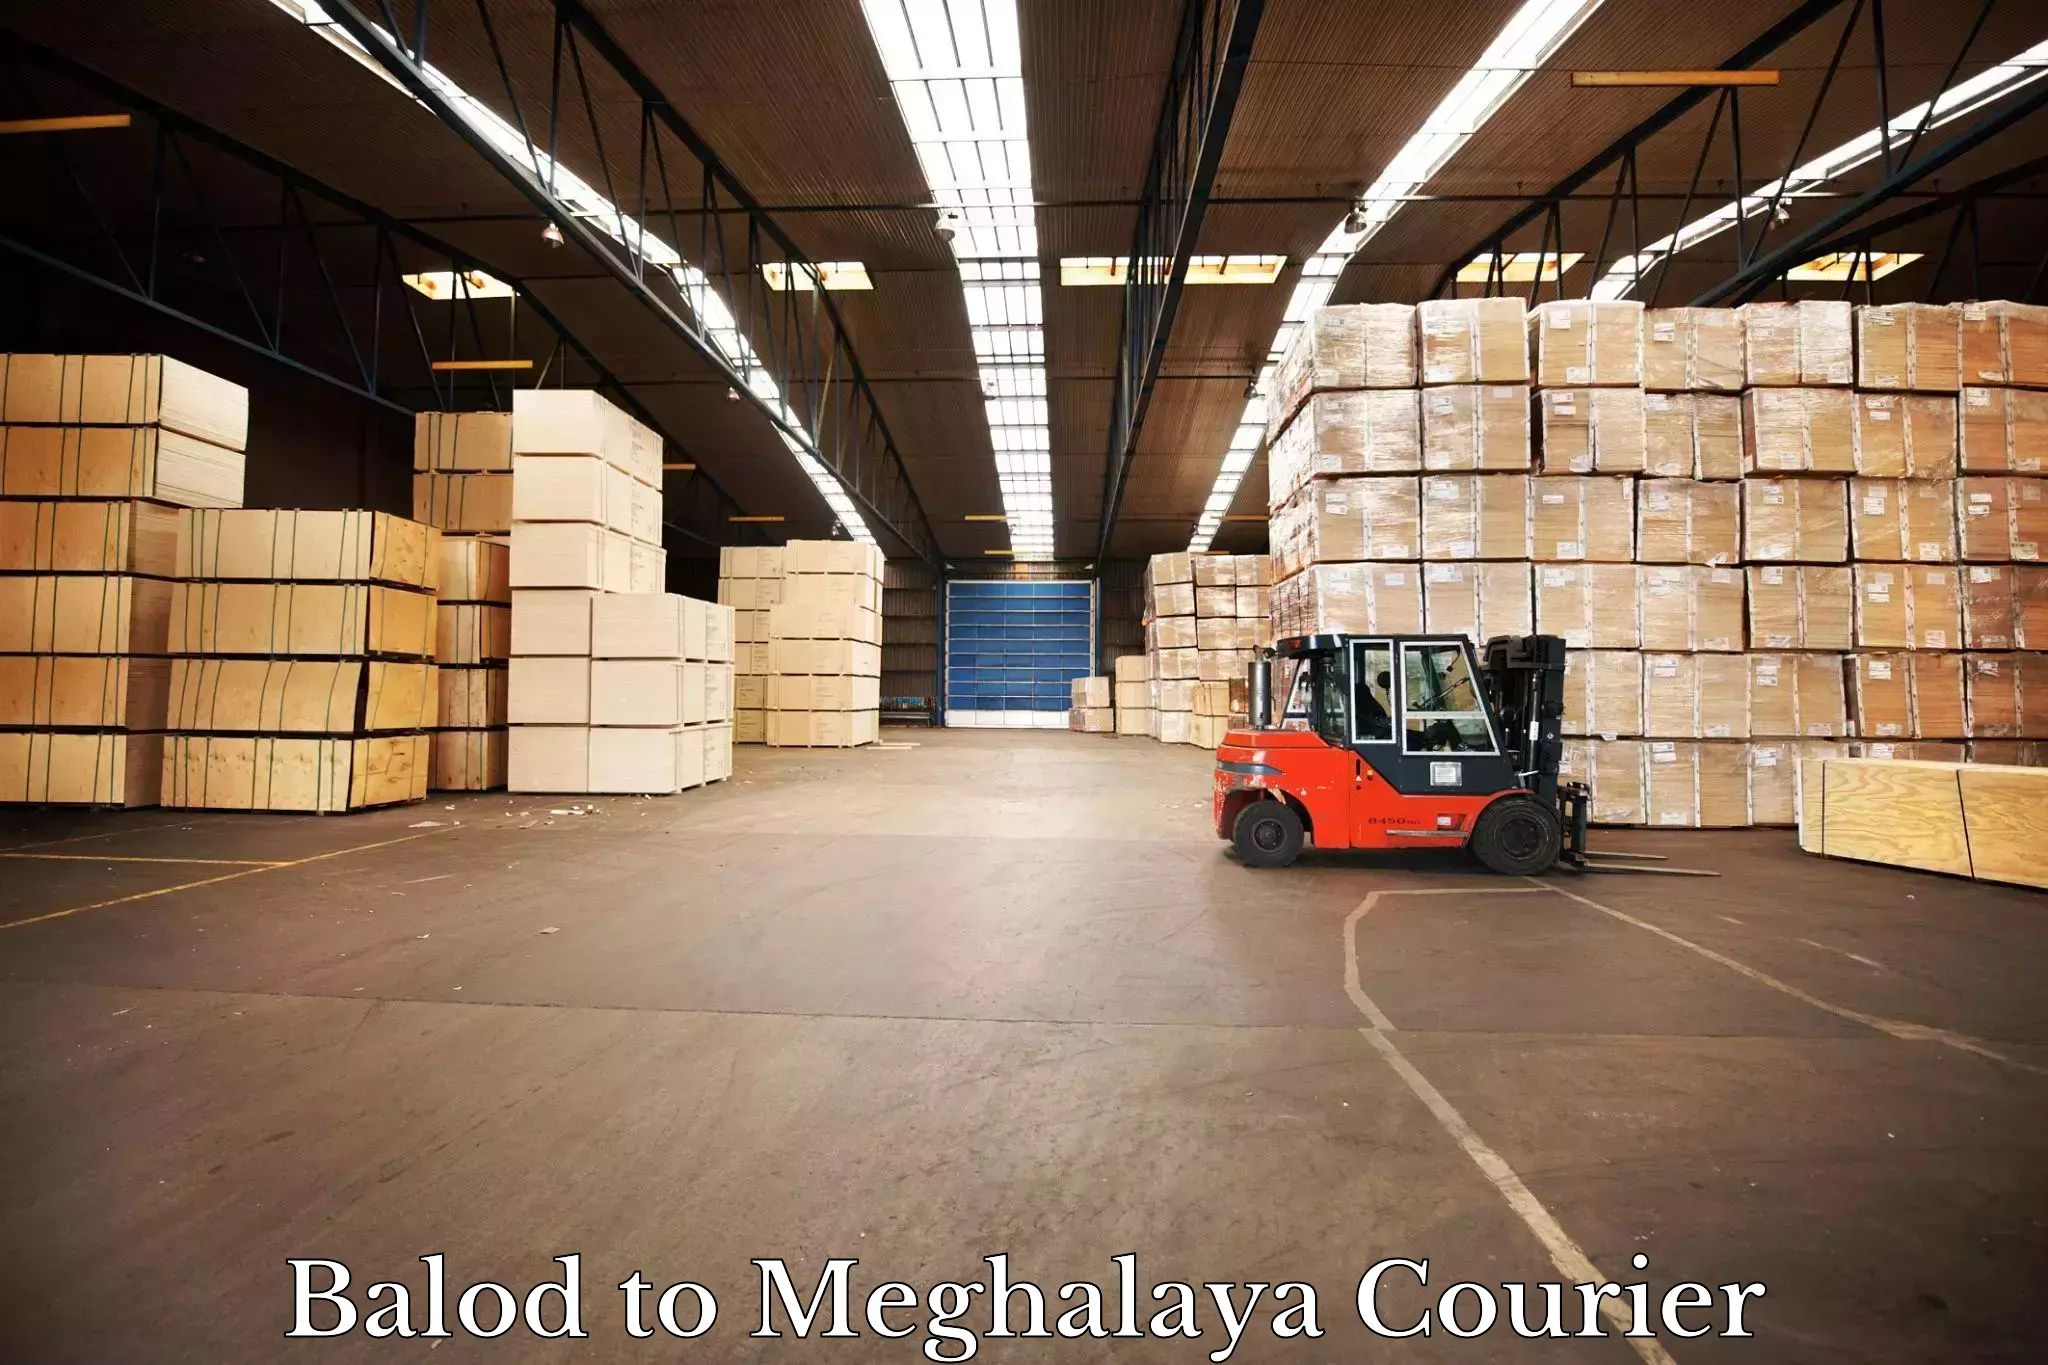 Courier service innovation Balod to Meghalaya